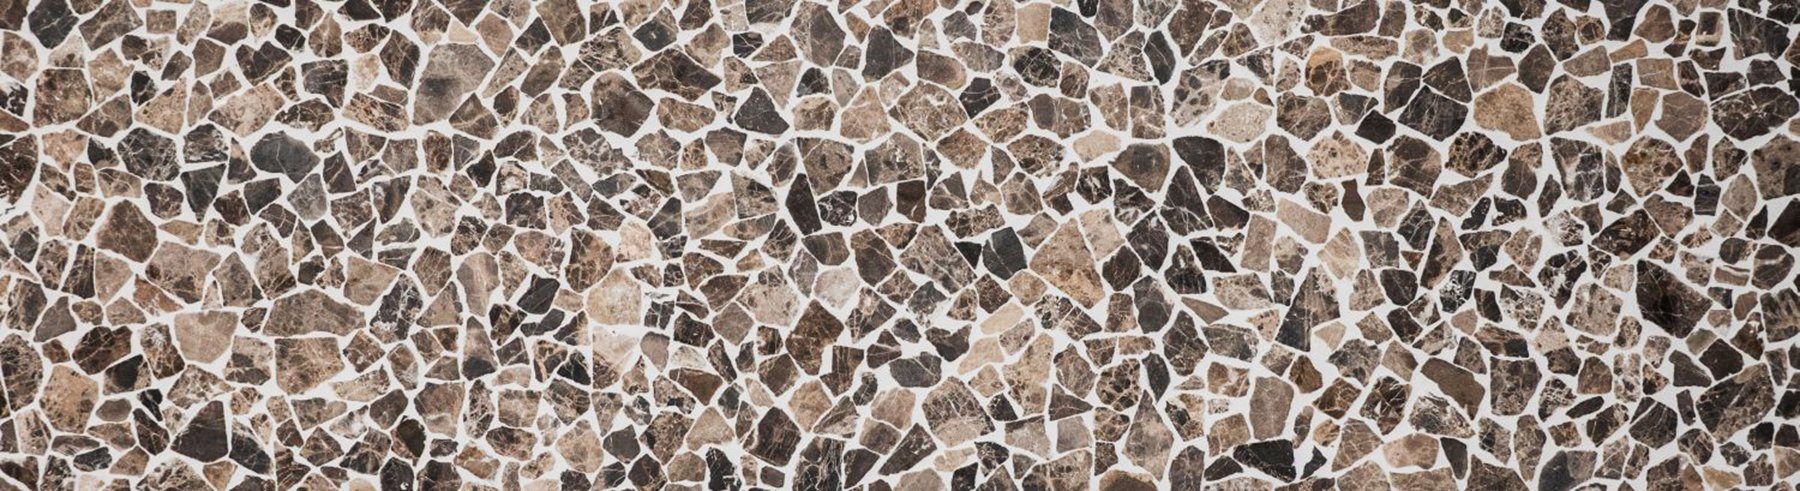 braun 10 Matten matt / Marmormosaik Bruch Mosaikfliesen Mosani Mosaikfliesen mix